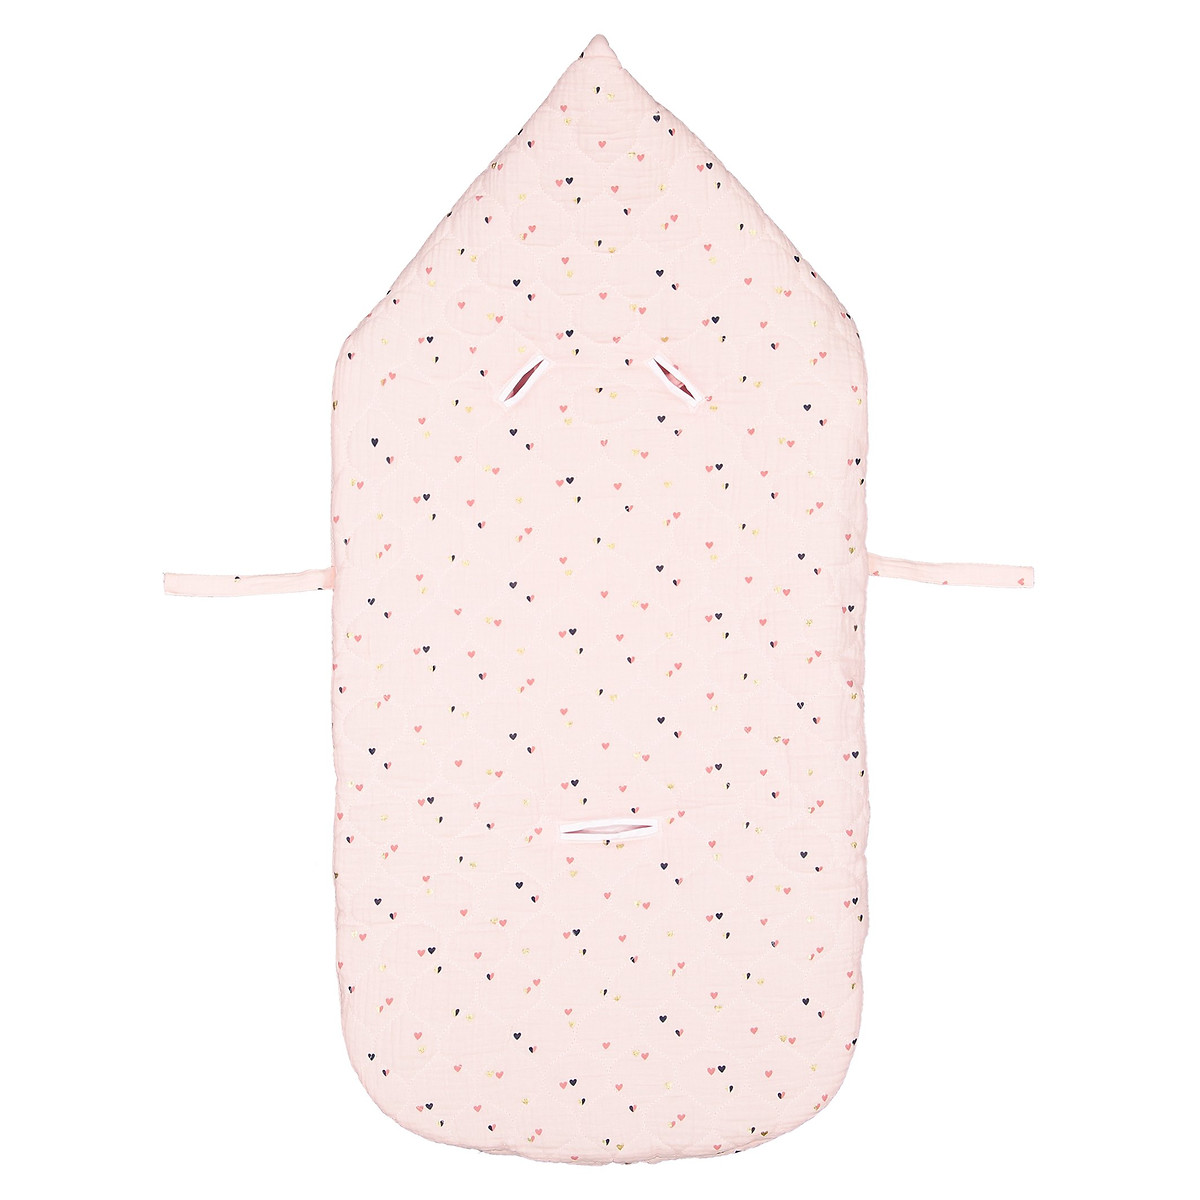 Конверт La Redoute Для новорожденных с капюшоном и рисунком единый размер розовый - фото 3